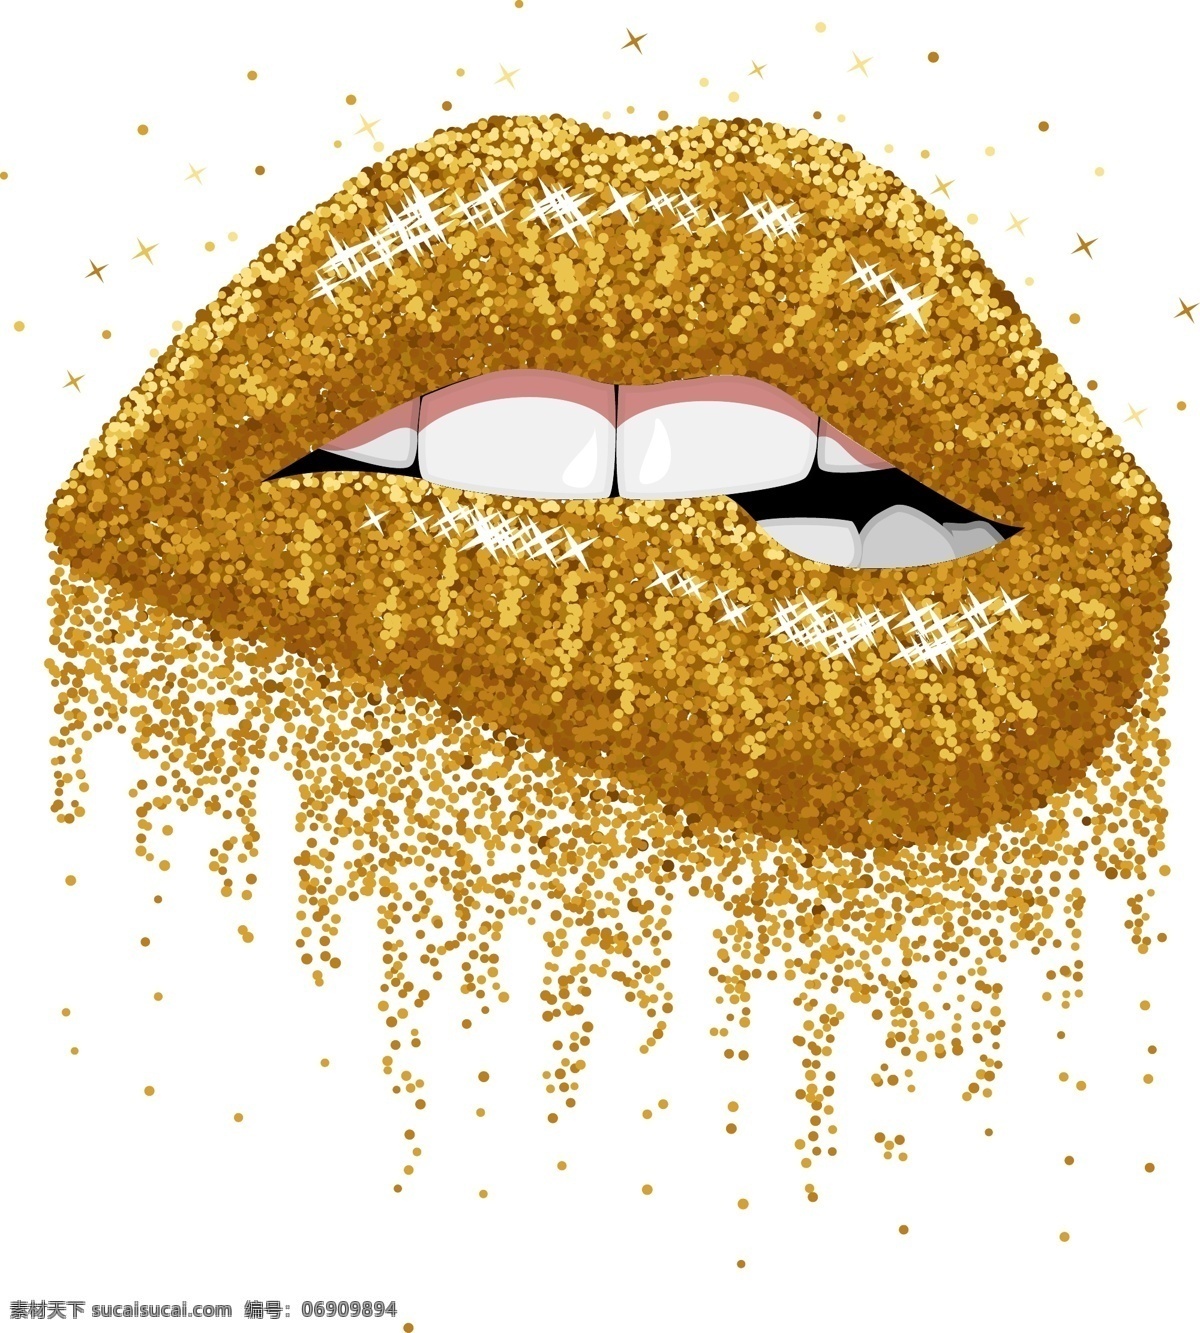 金色嘴唇 服装设计 女装设计 男装设计 金色 嘴唇 矢量图片 嘴巴 创意嘴唇 创意嘴巴 艺术 海报